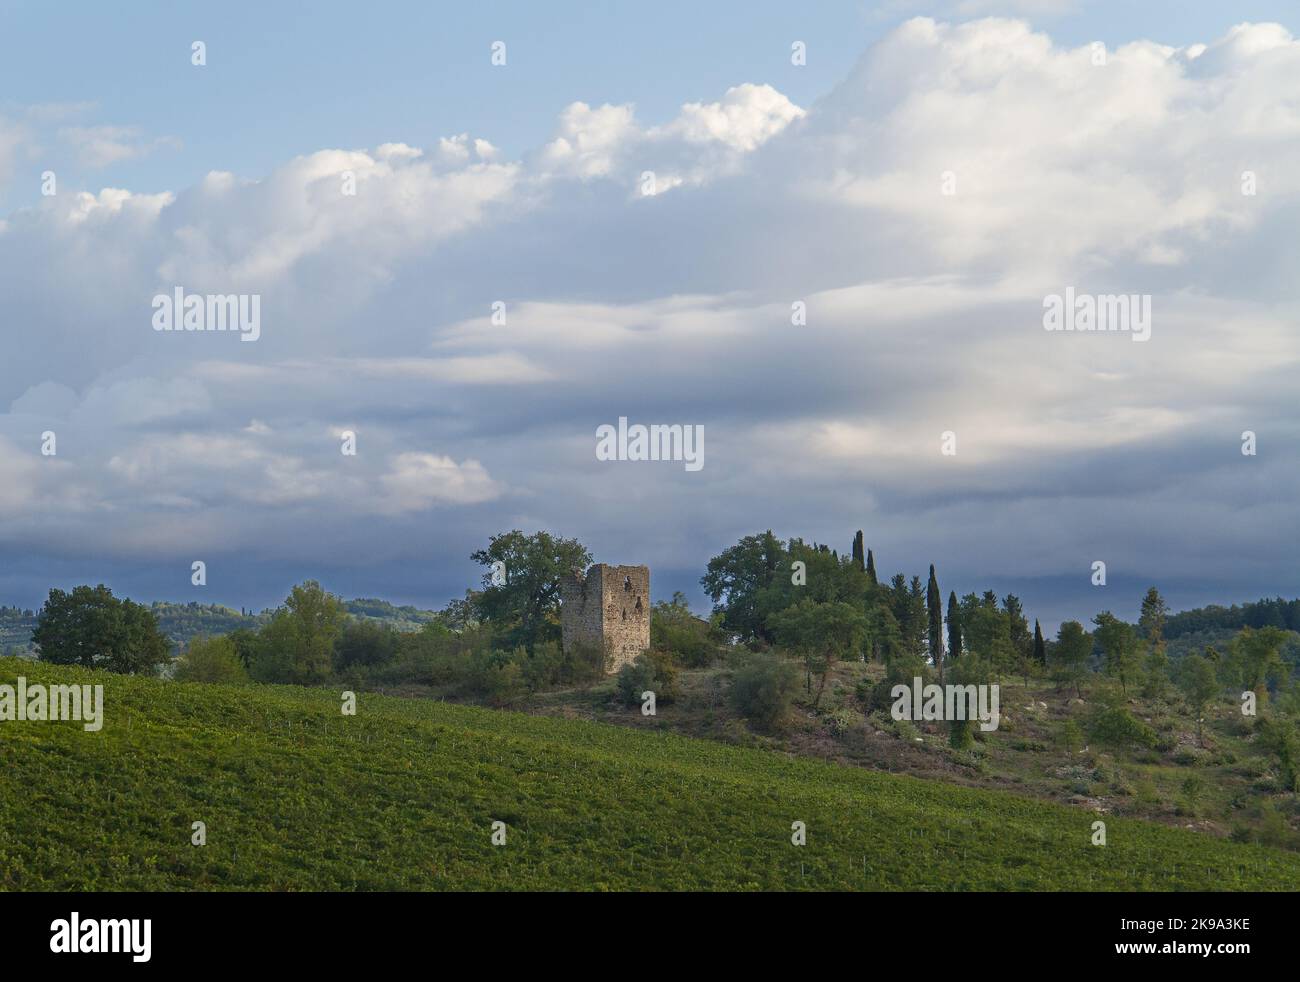 Paysage en Toscane avec la vigne et les ruines d'une tour médiévale Banque D'Images